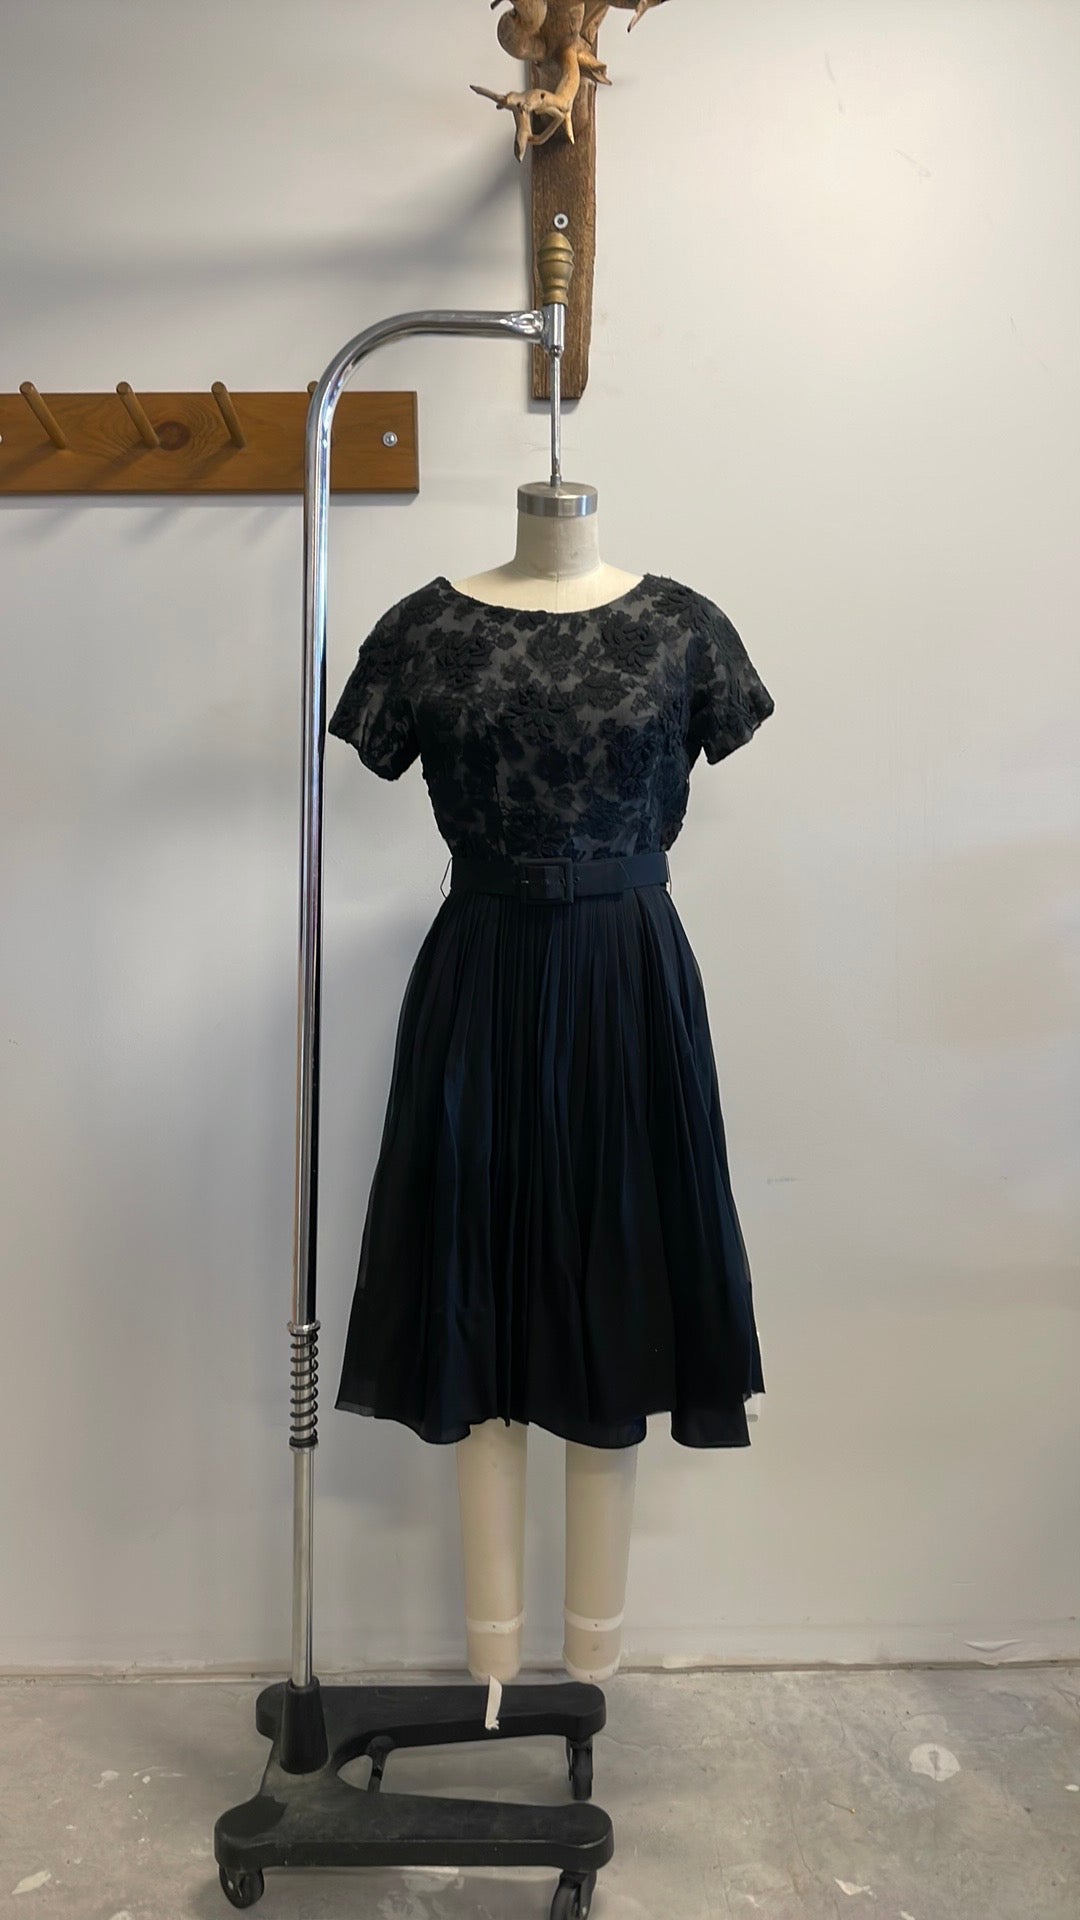 Vintage Lace Black Dress